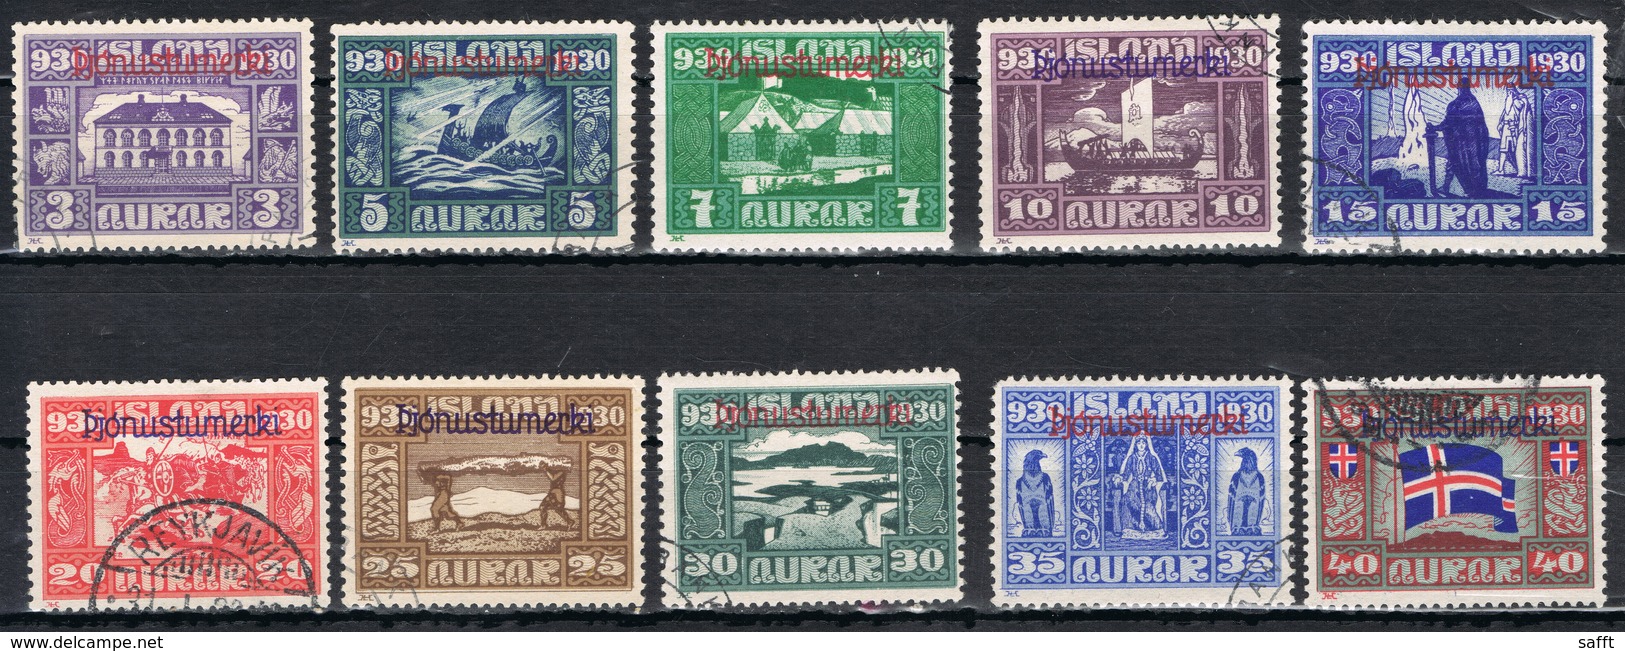 Island Dienst 44/53 Gestempelt - Kurzsatz Allthing 1930 - Dienstmarken